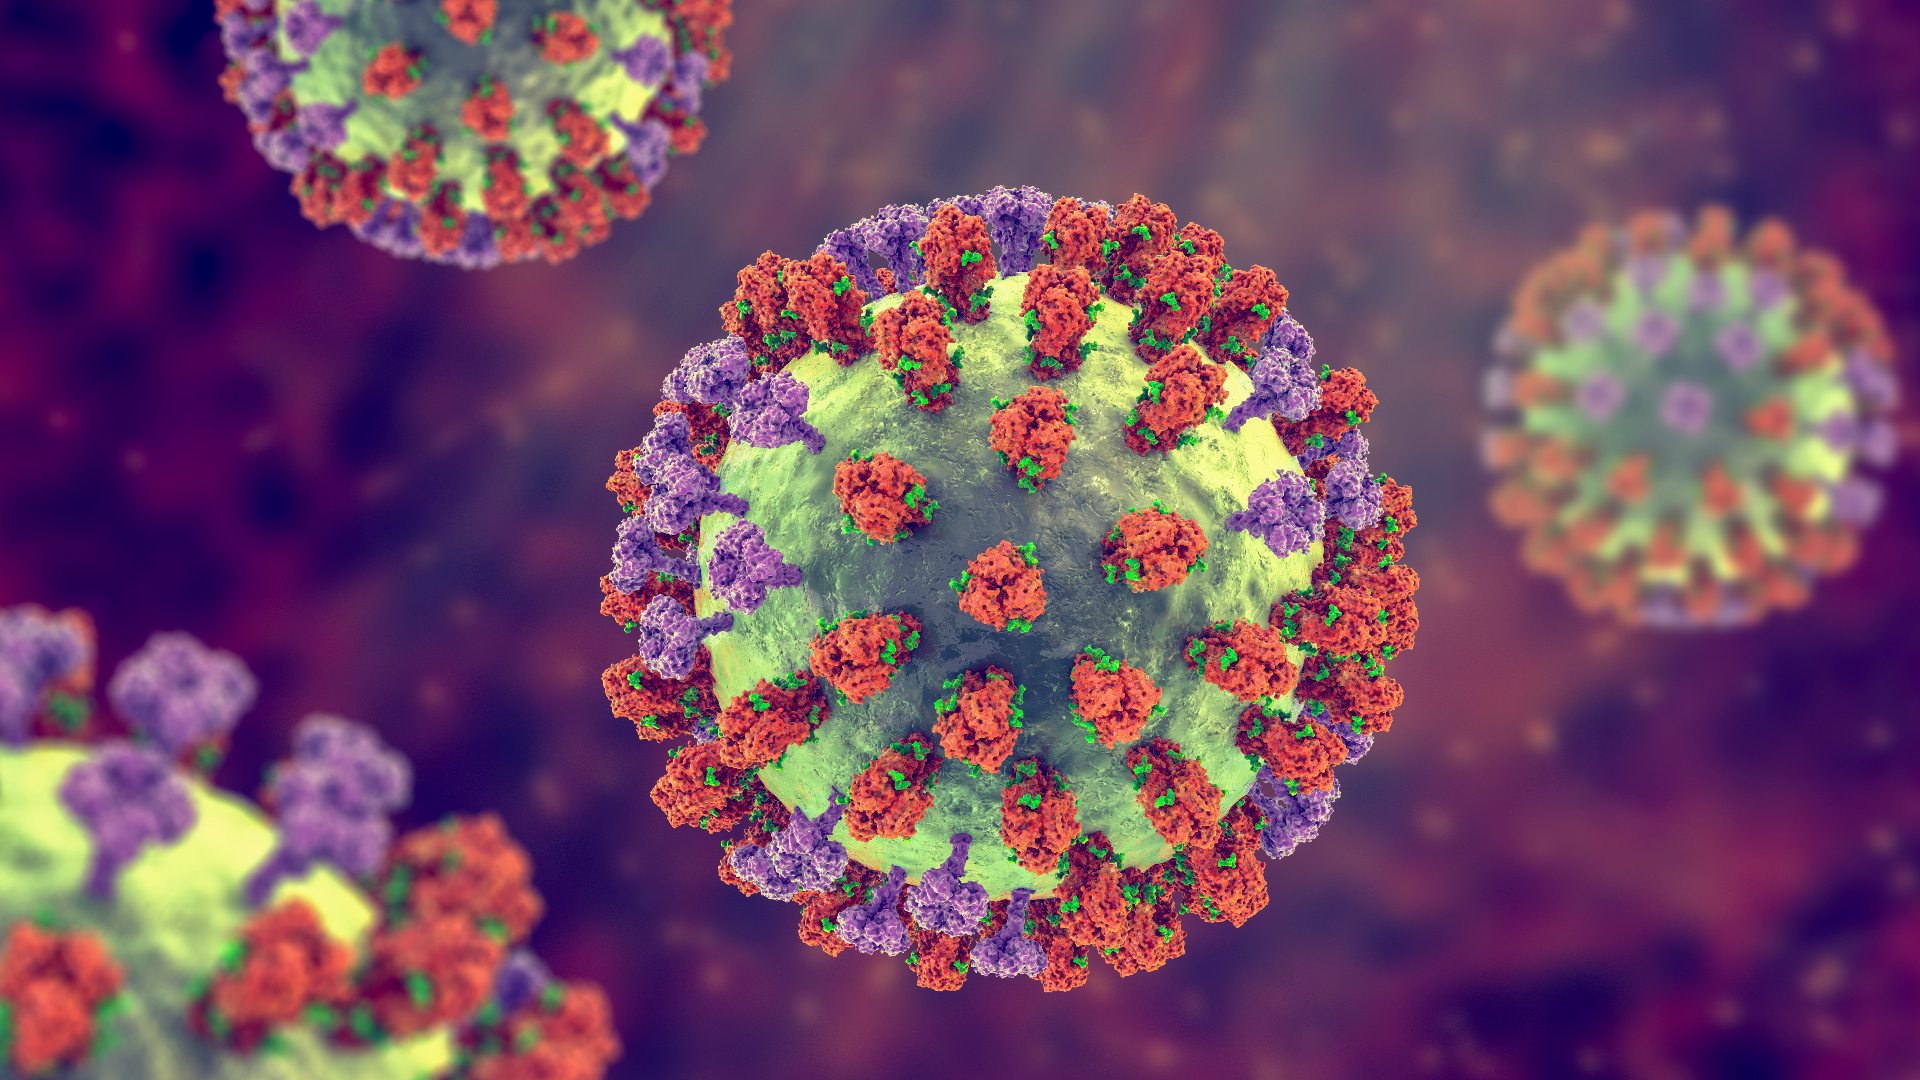 An artist's illustration of the flu virus